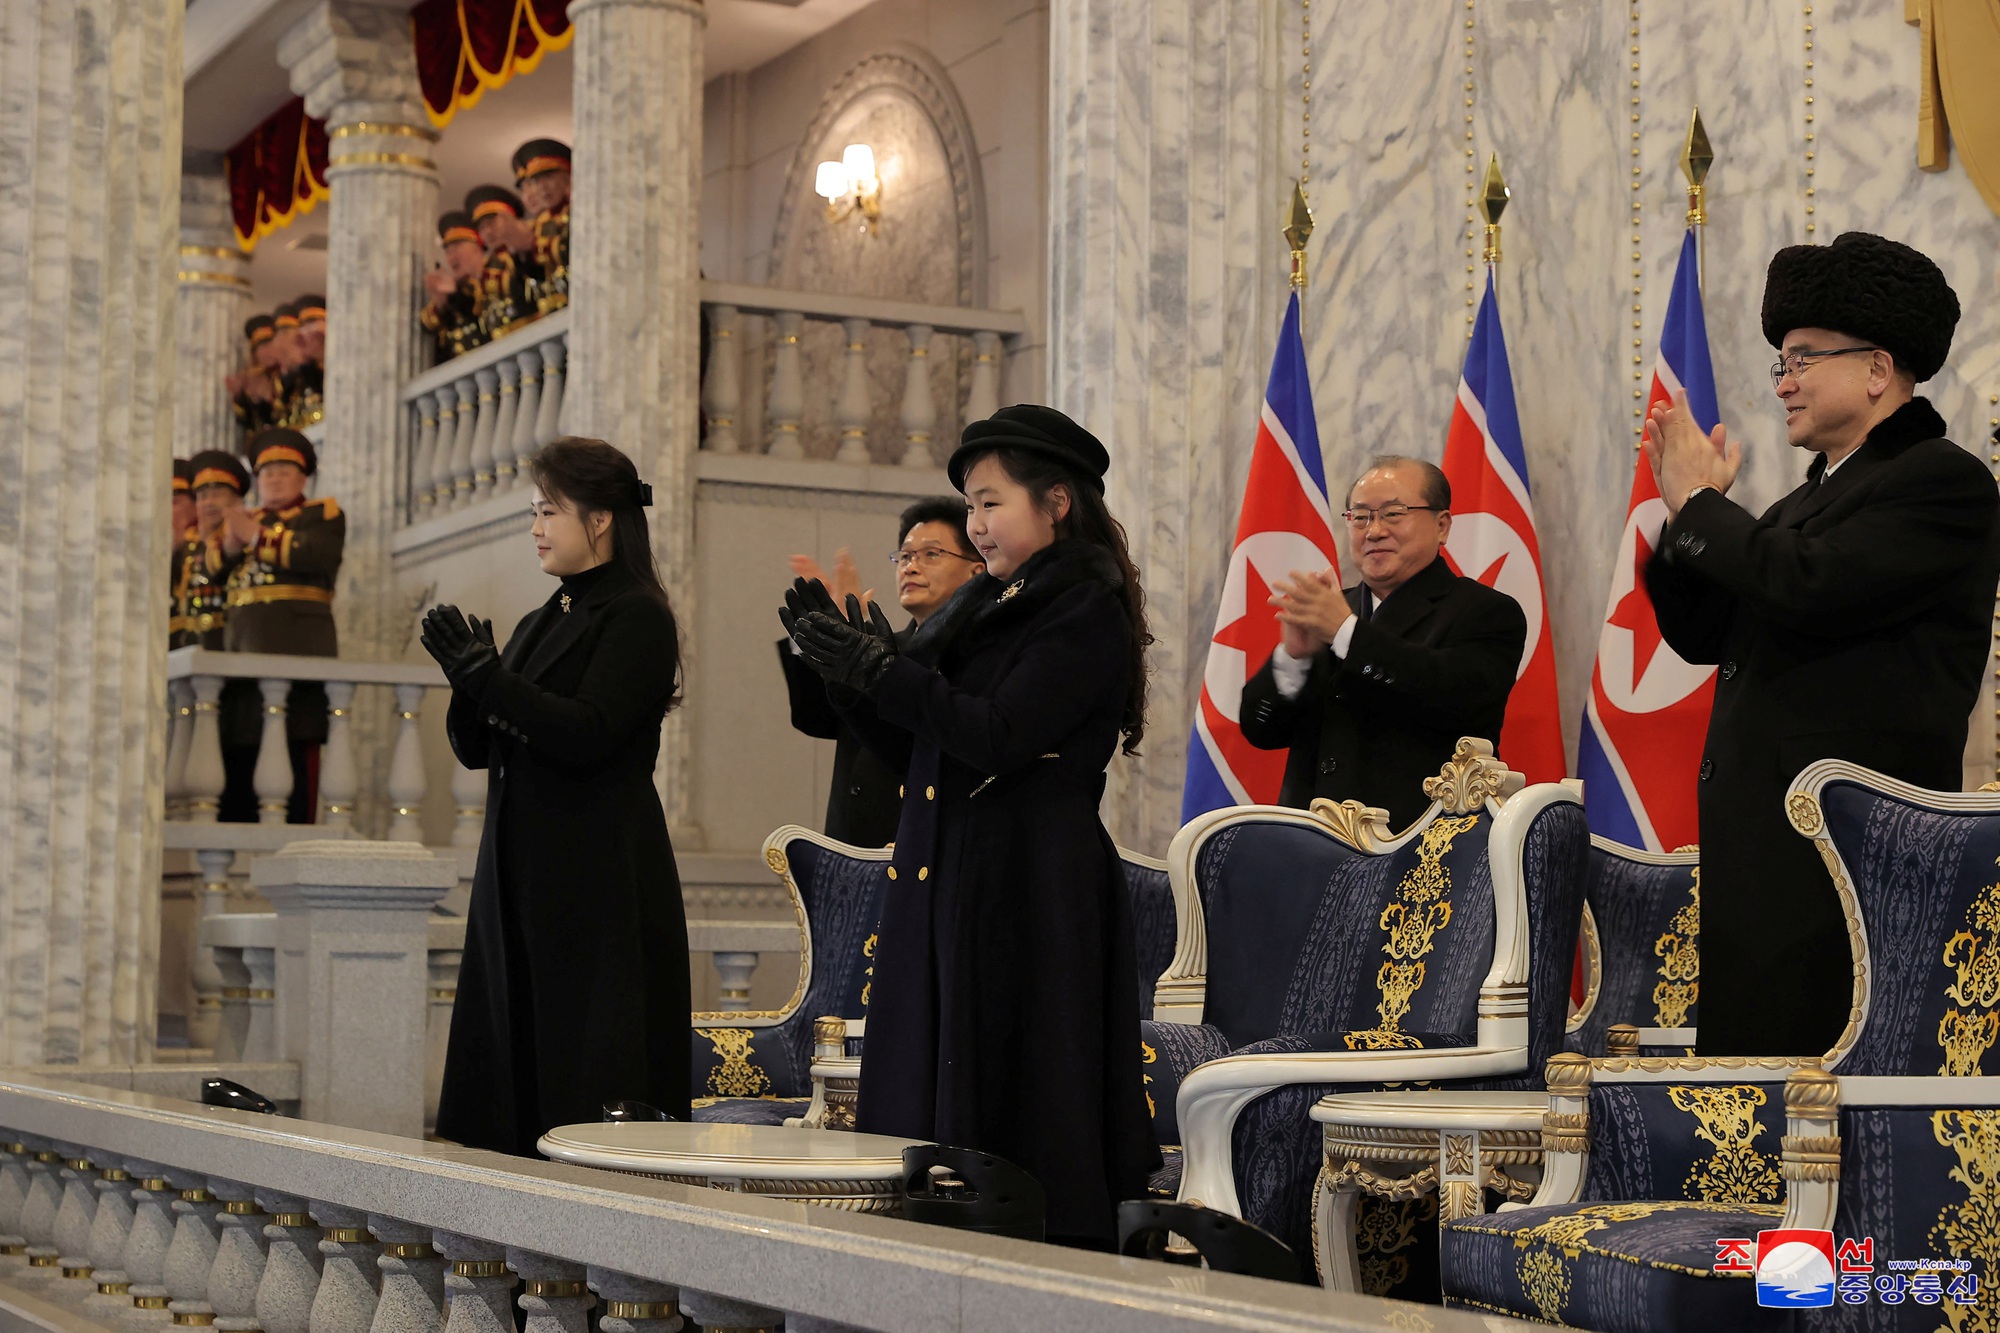 Chùm ảnh ông Kim Jong-un cùng phu nhân, con gái dự cuộc duyệt binh lớn - Ảnh 15.